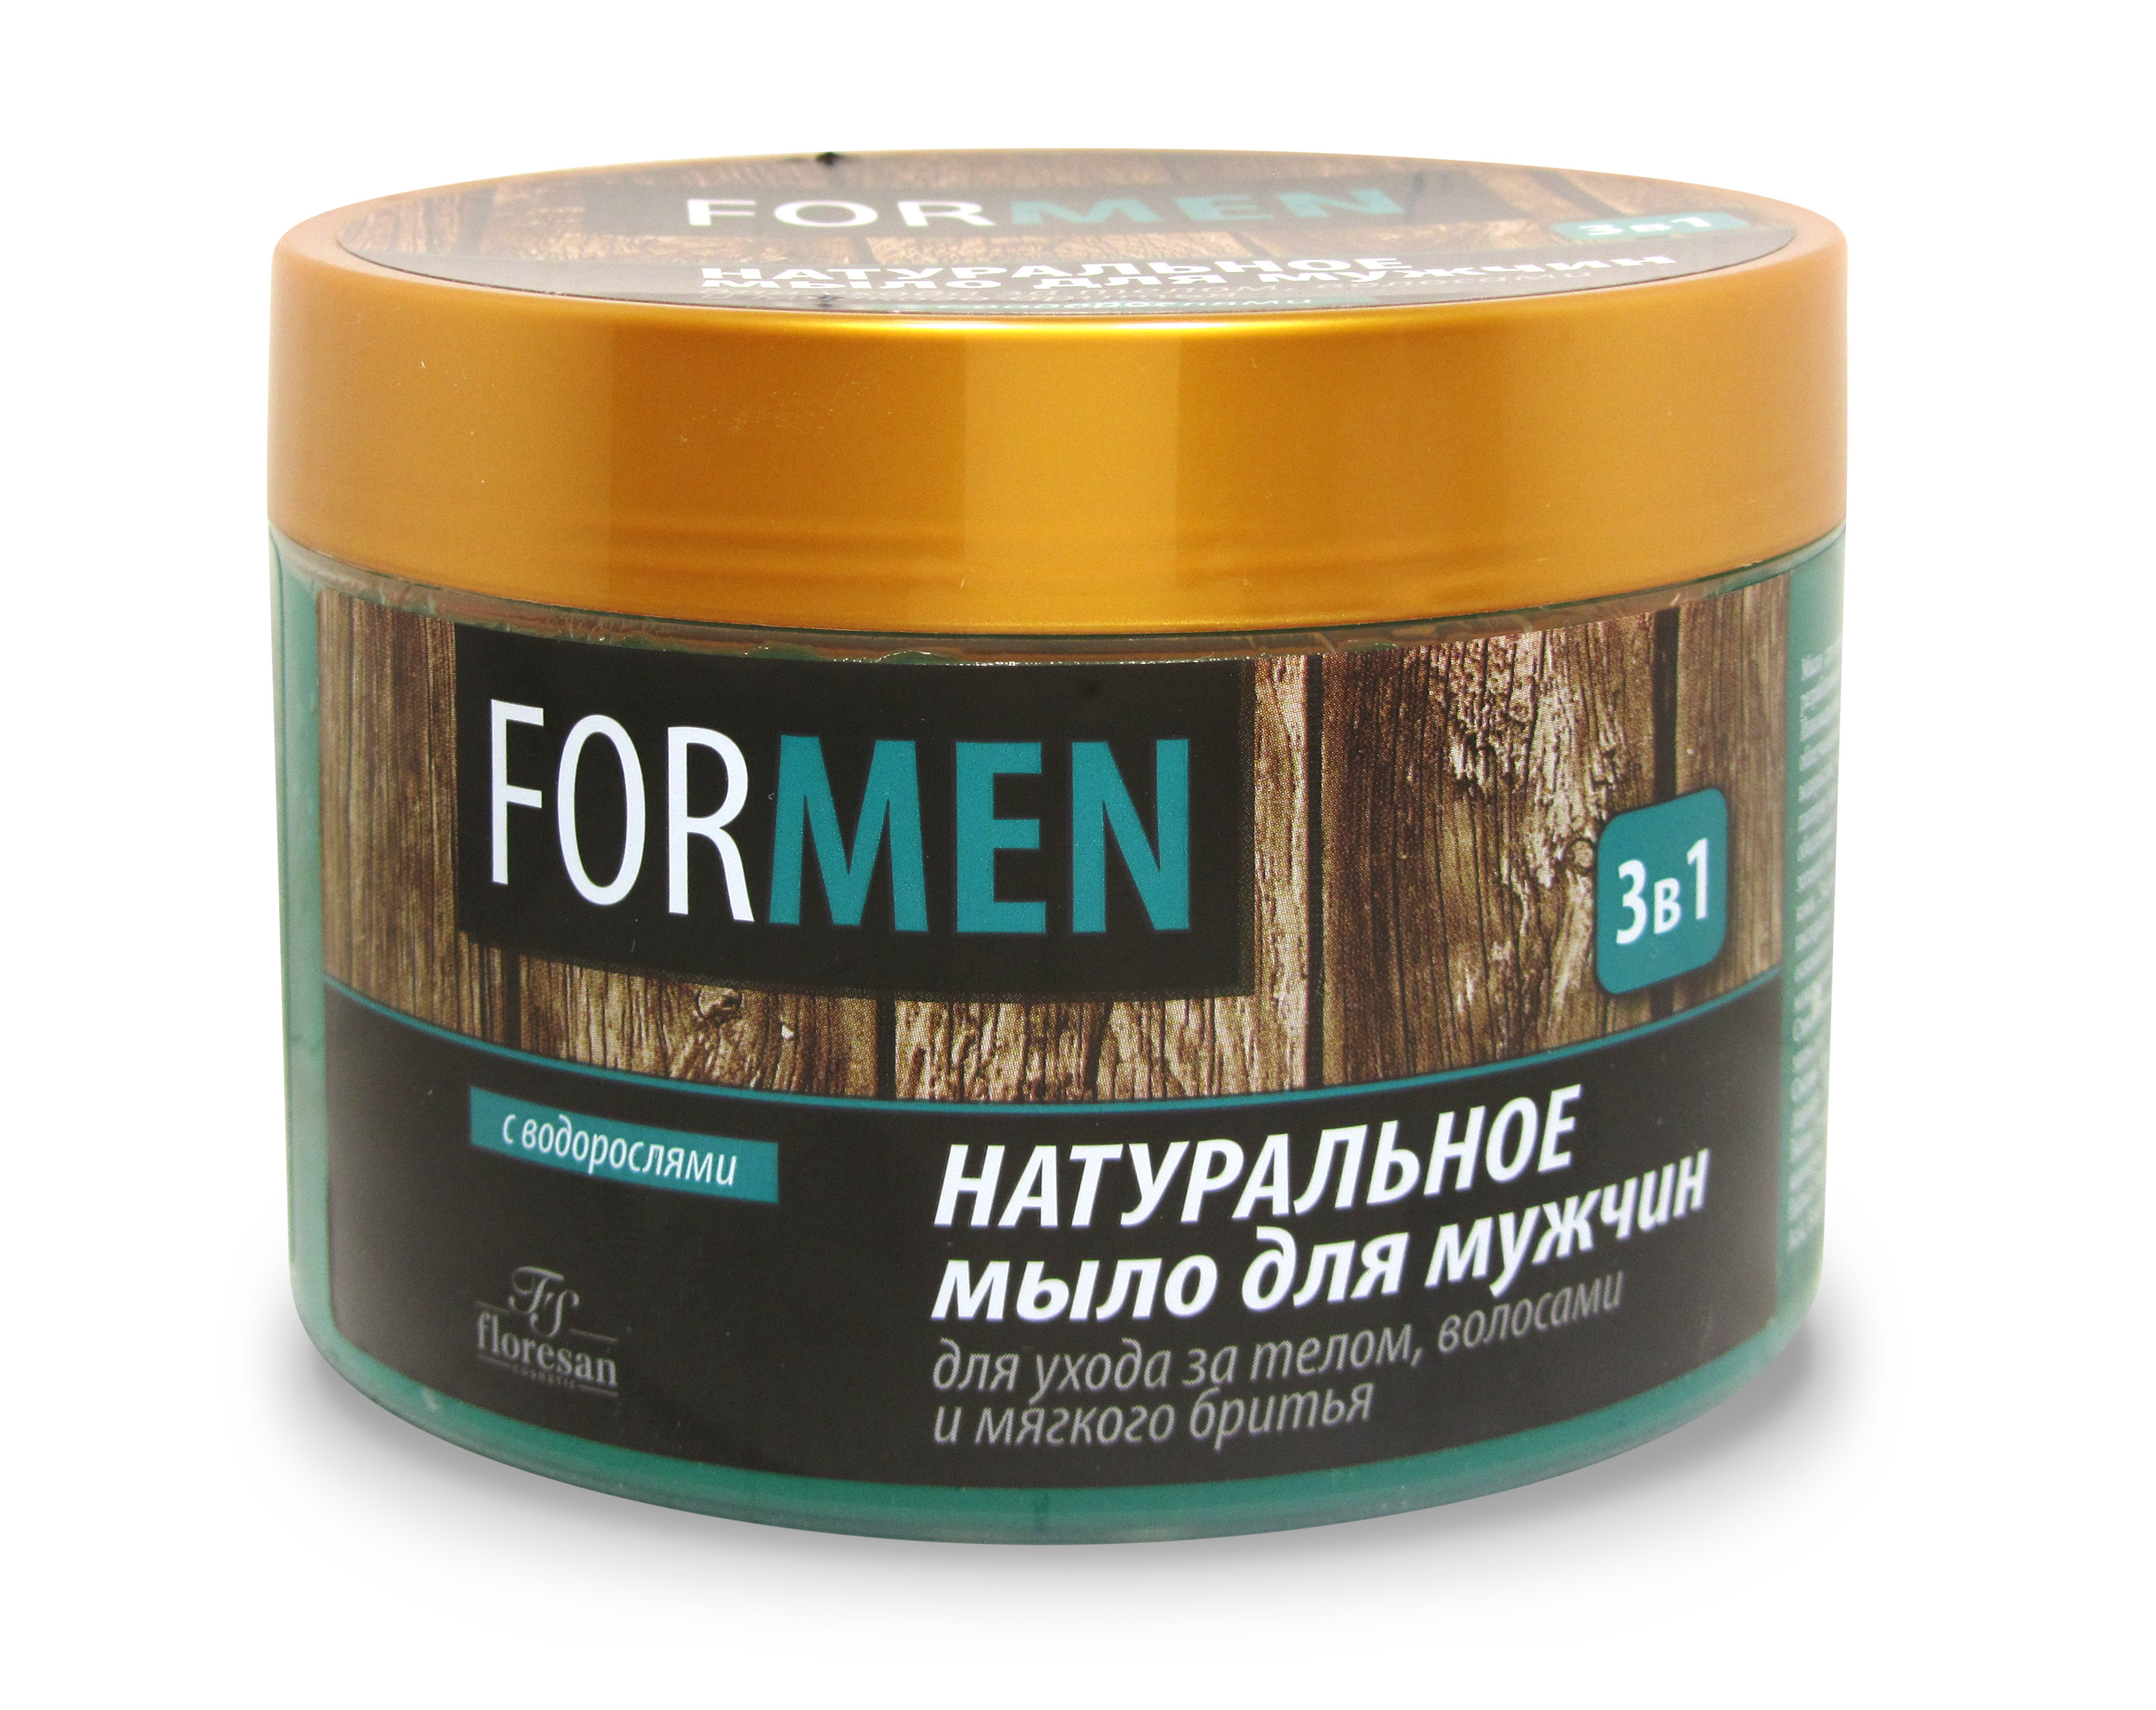 Натуральное мыло для мужчин для ухода за телом, волосами и мягкого бритья, Флоресан, 450 г